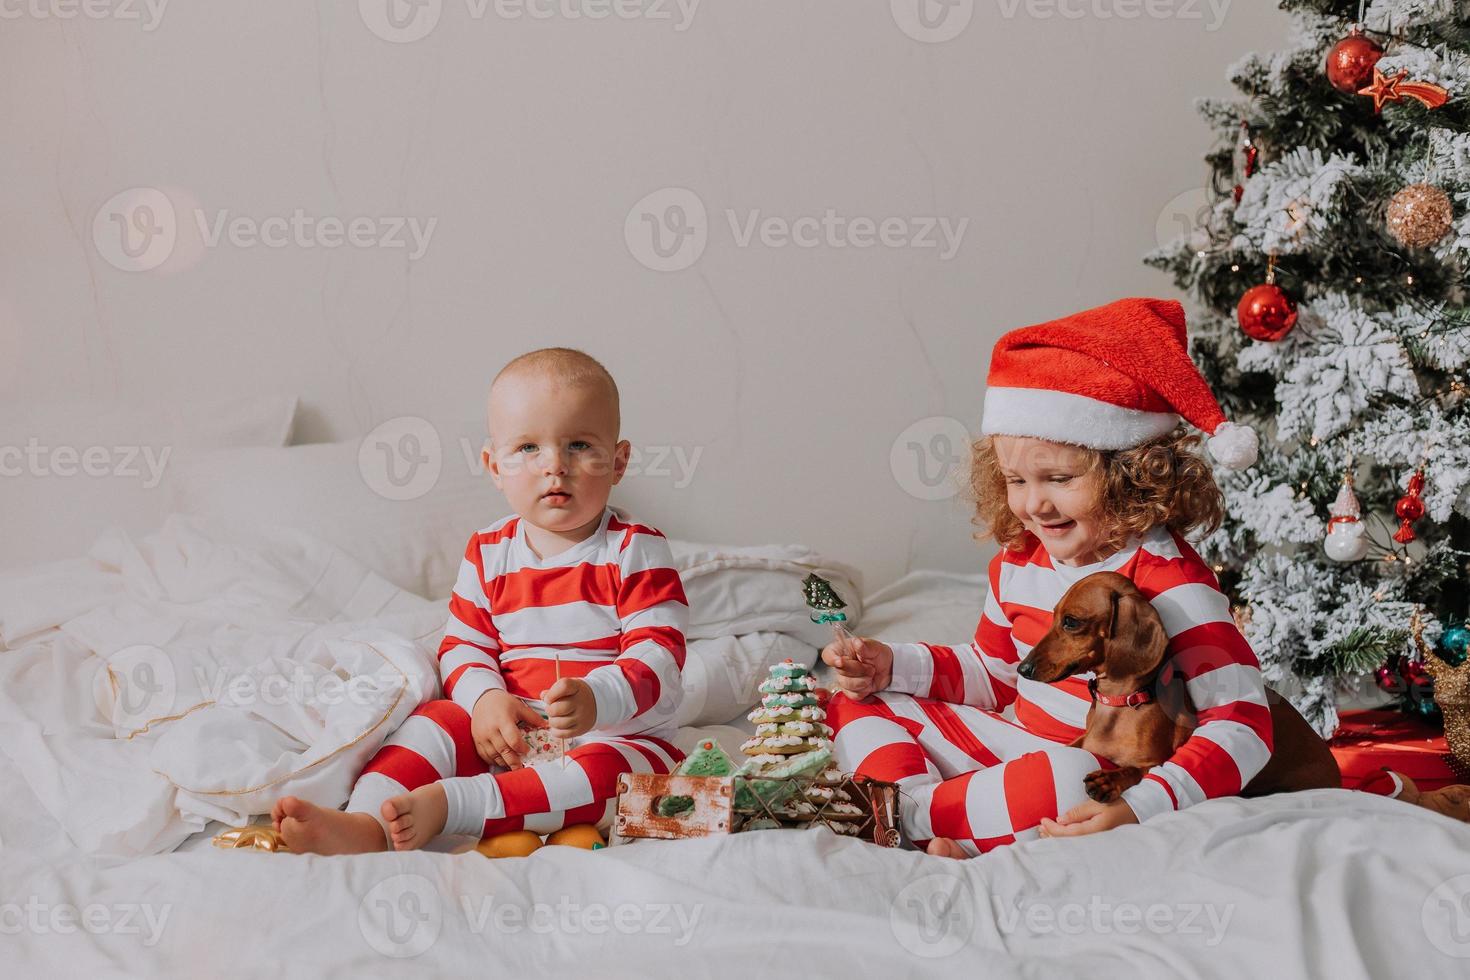 kinderen in rood en wit pyjama zittend in bed delen Kerstmis snoepgoed met elk andere en hun hond. broer en zus, jongen en meisje vieren de nieuw jaar. ruimte voor tekst. hoog kwaliteit foto